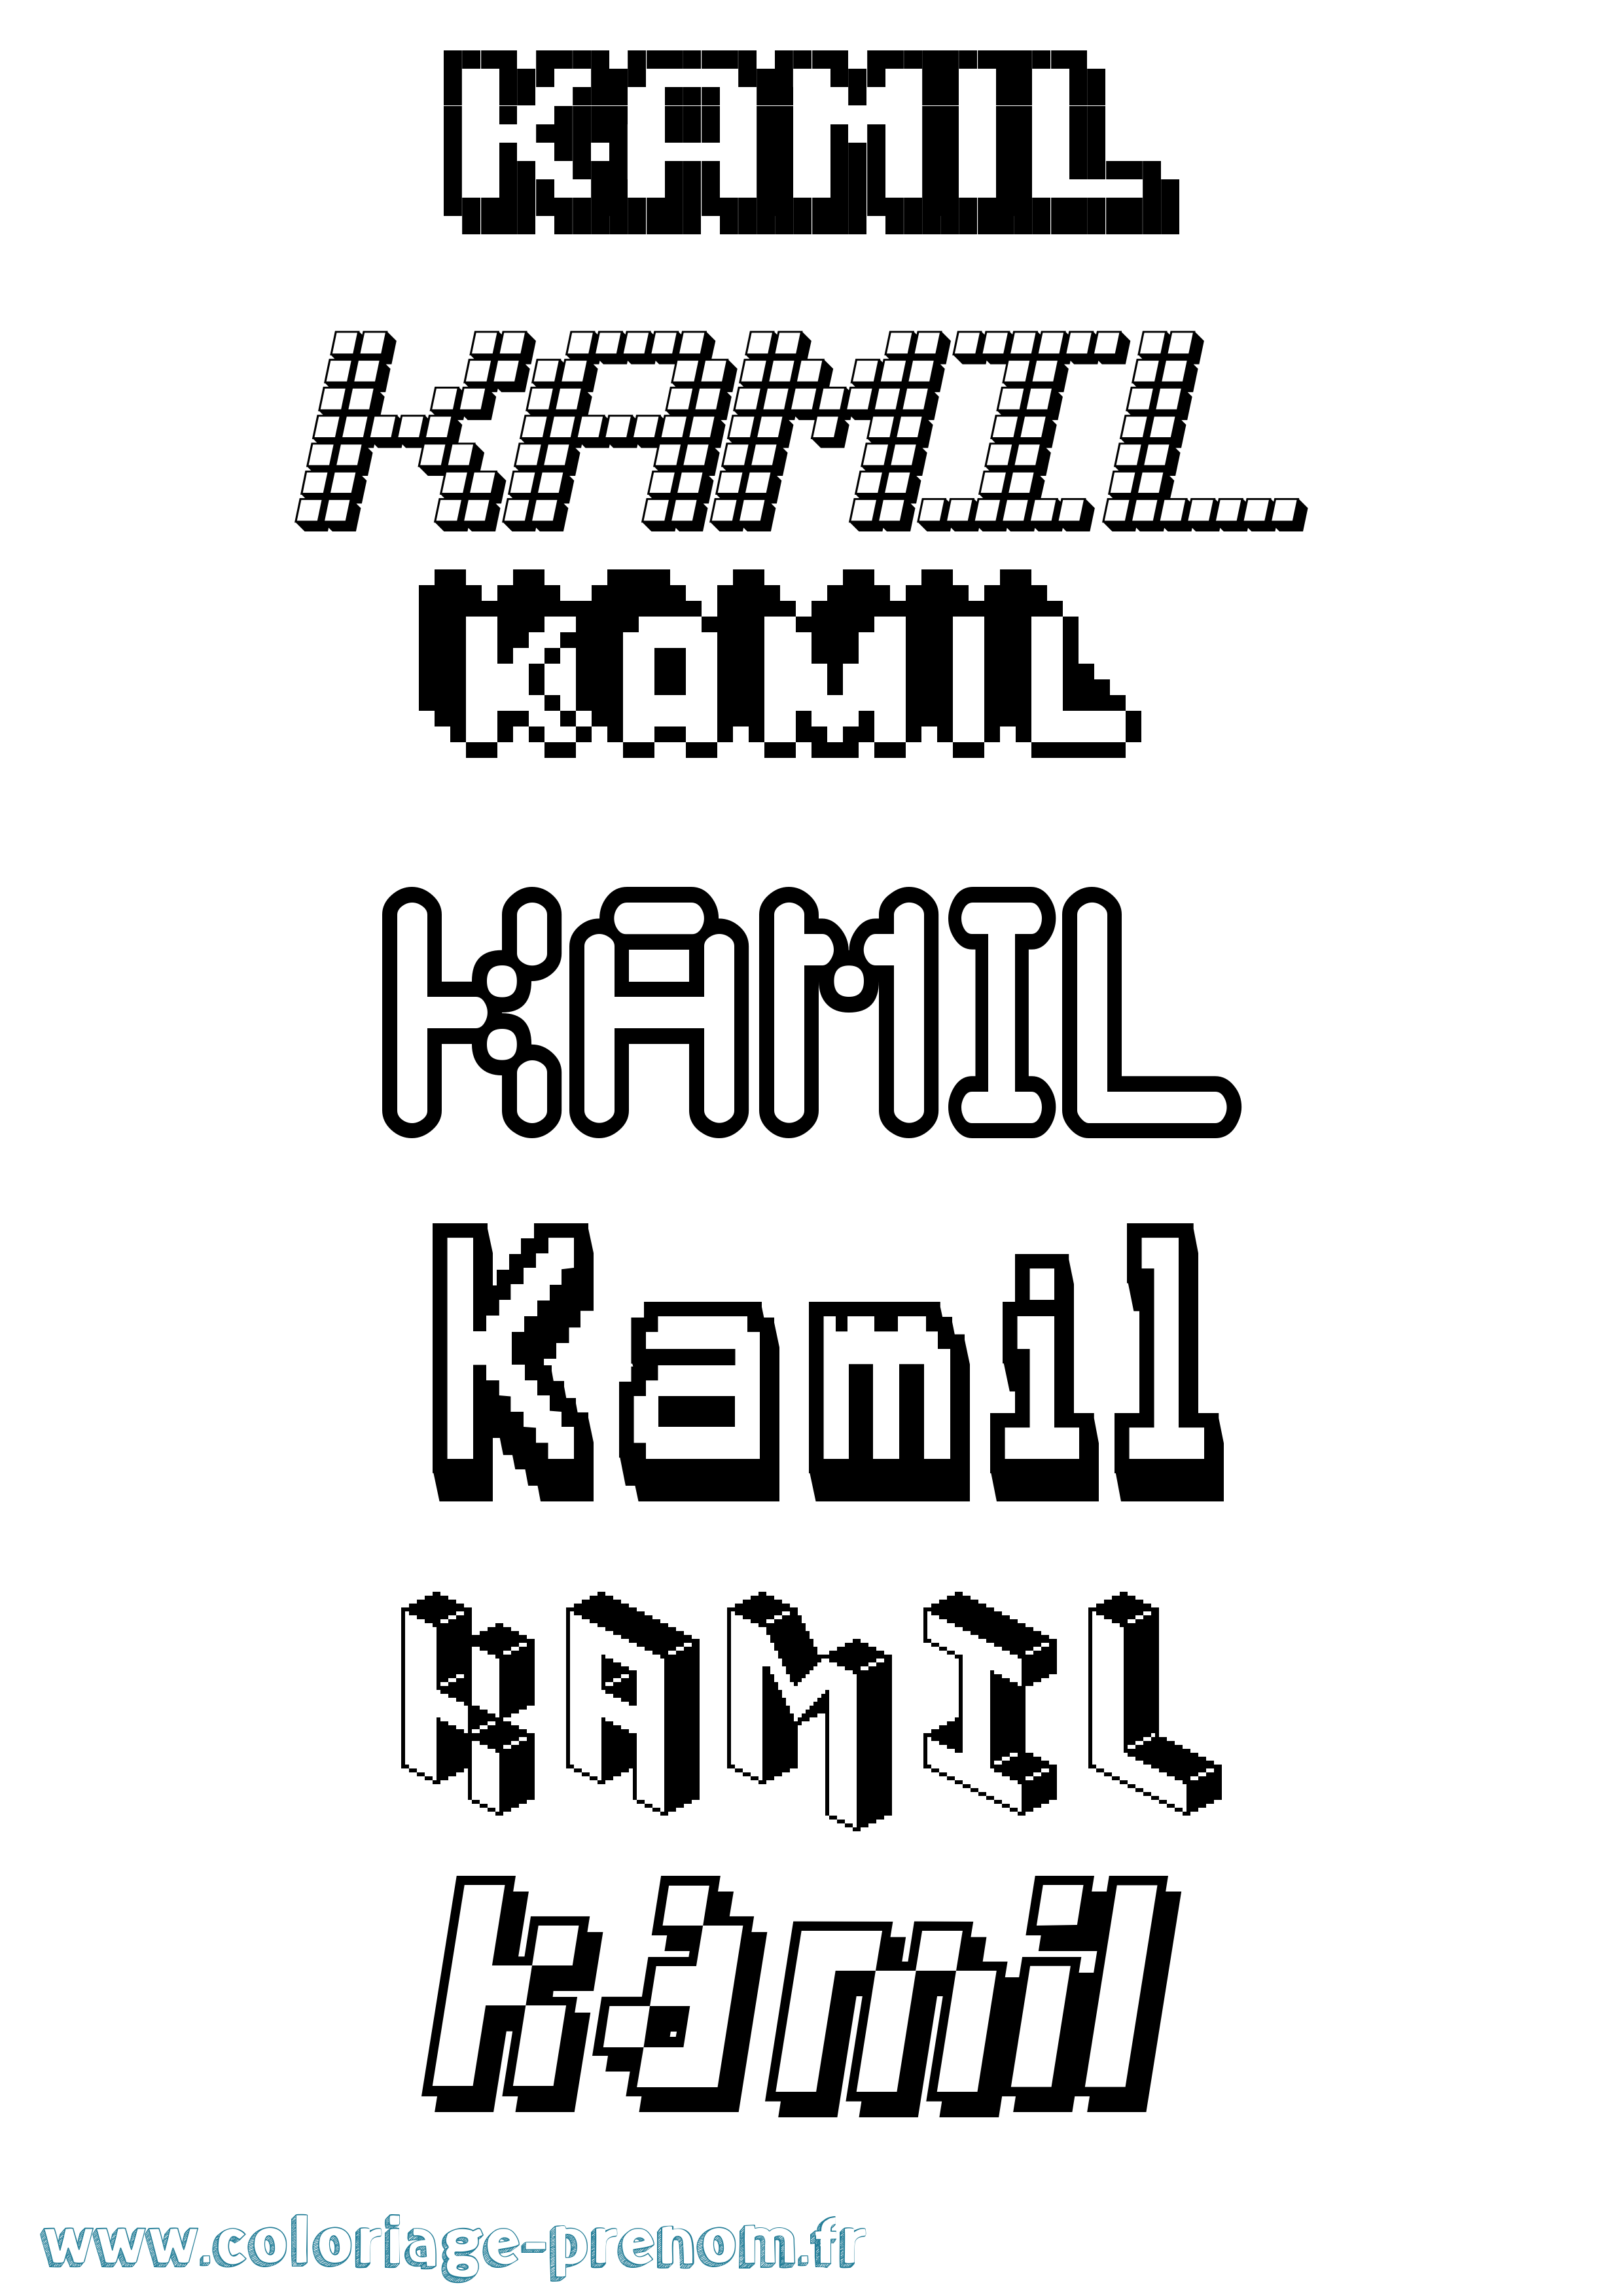 Coloriage prénom Kamil Pixel